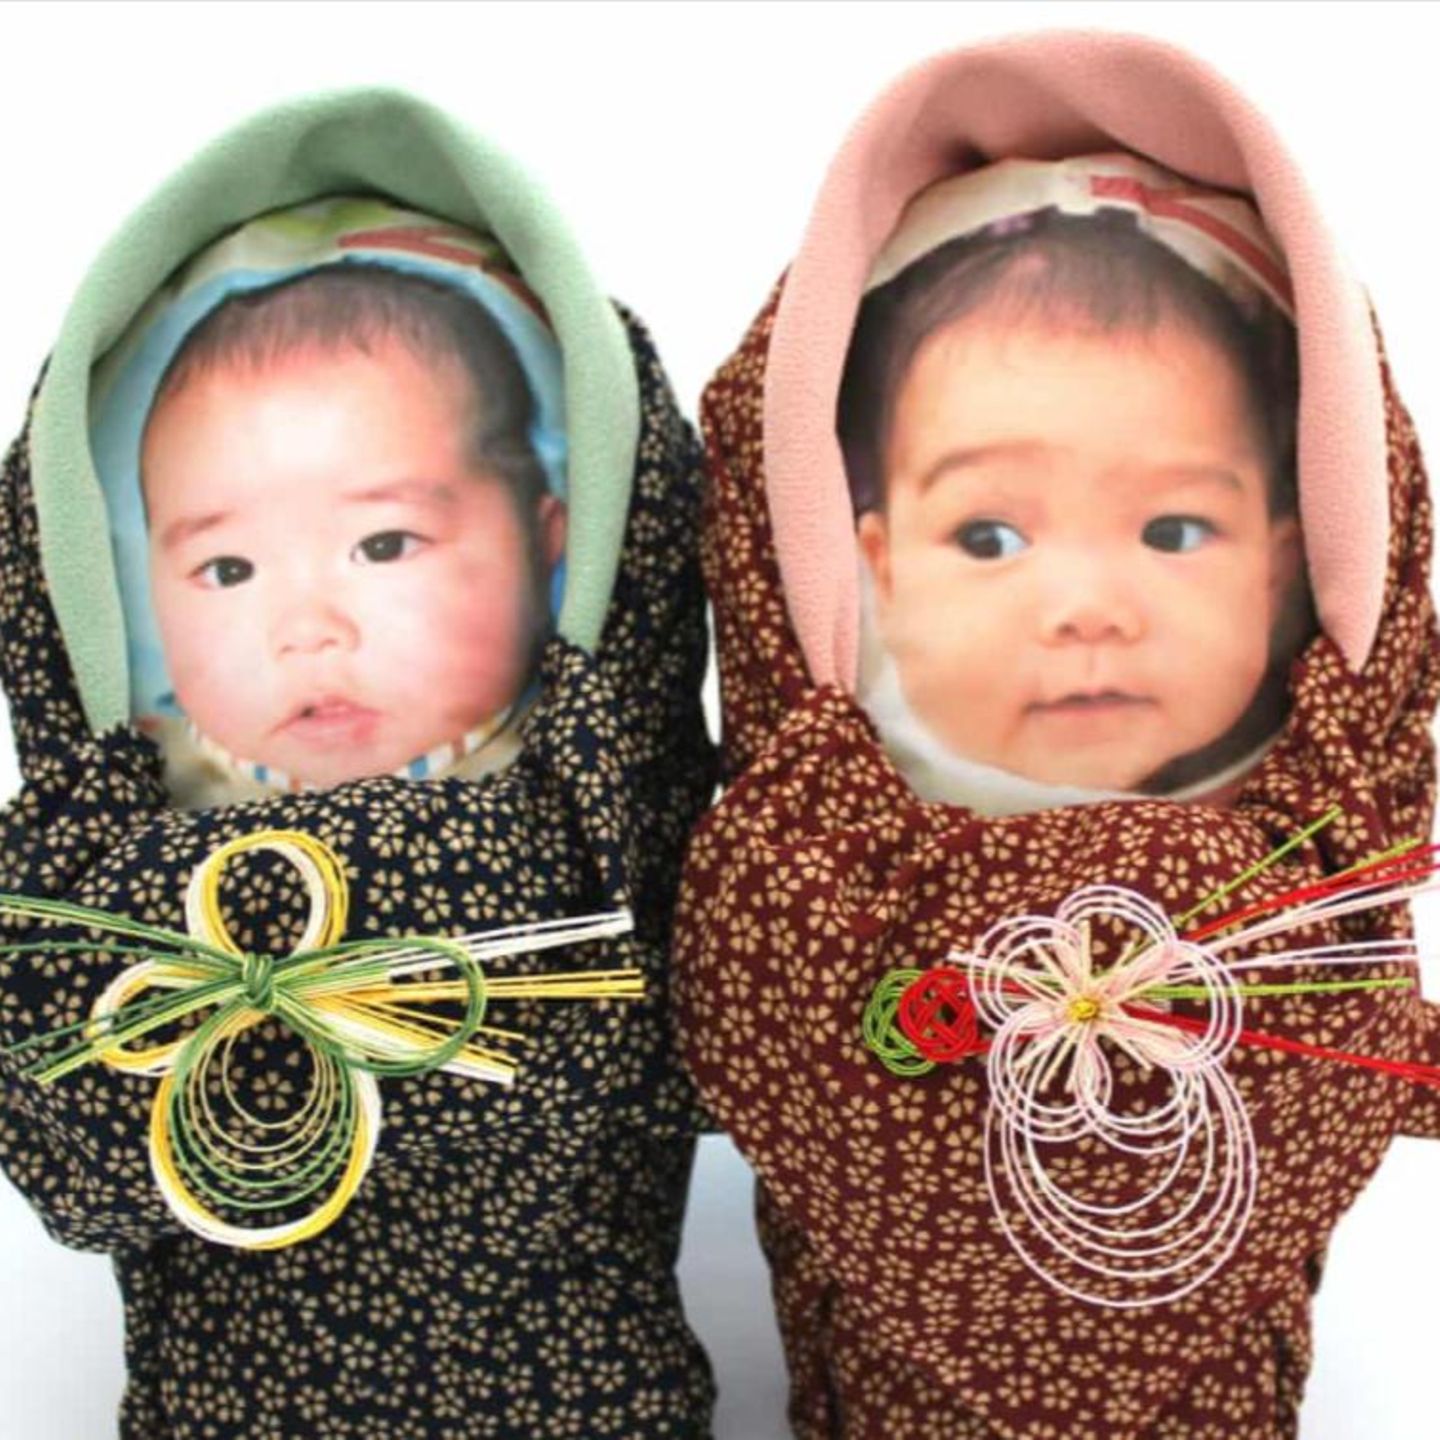 Geschenk von Eltern: Sie verschicken Reissäcke, die aussehen wie ihr Baby